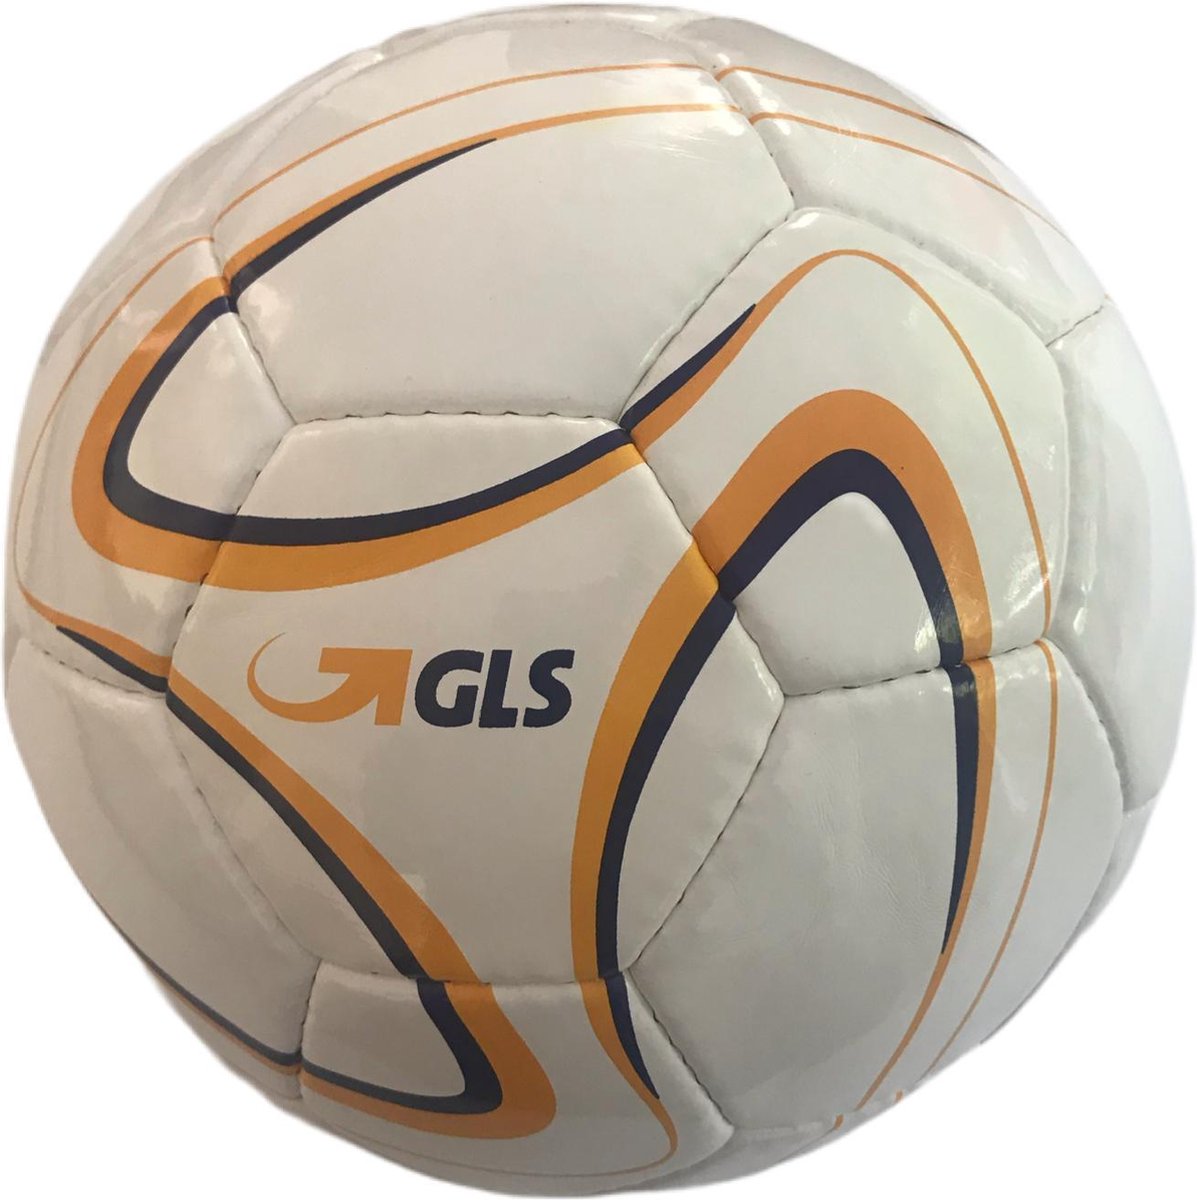 Gameballs - Voetbal - GLS - Wit goud - Maat 5